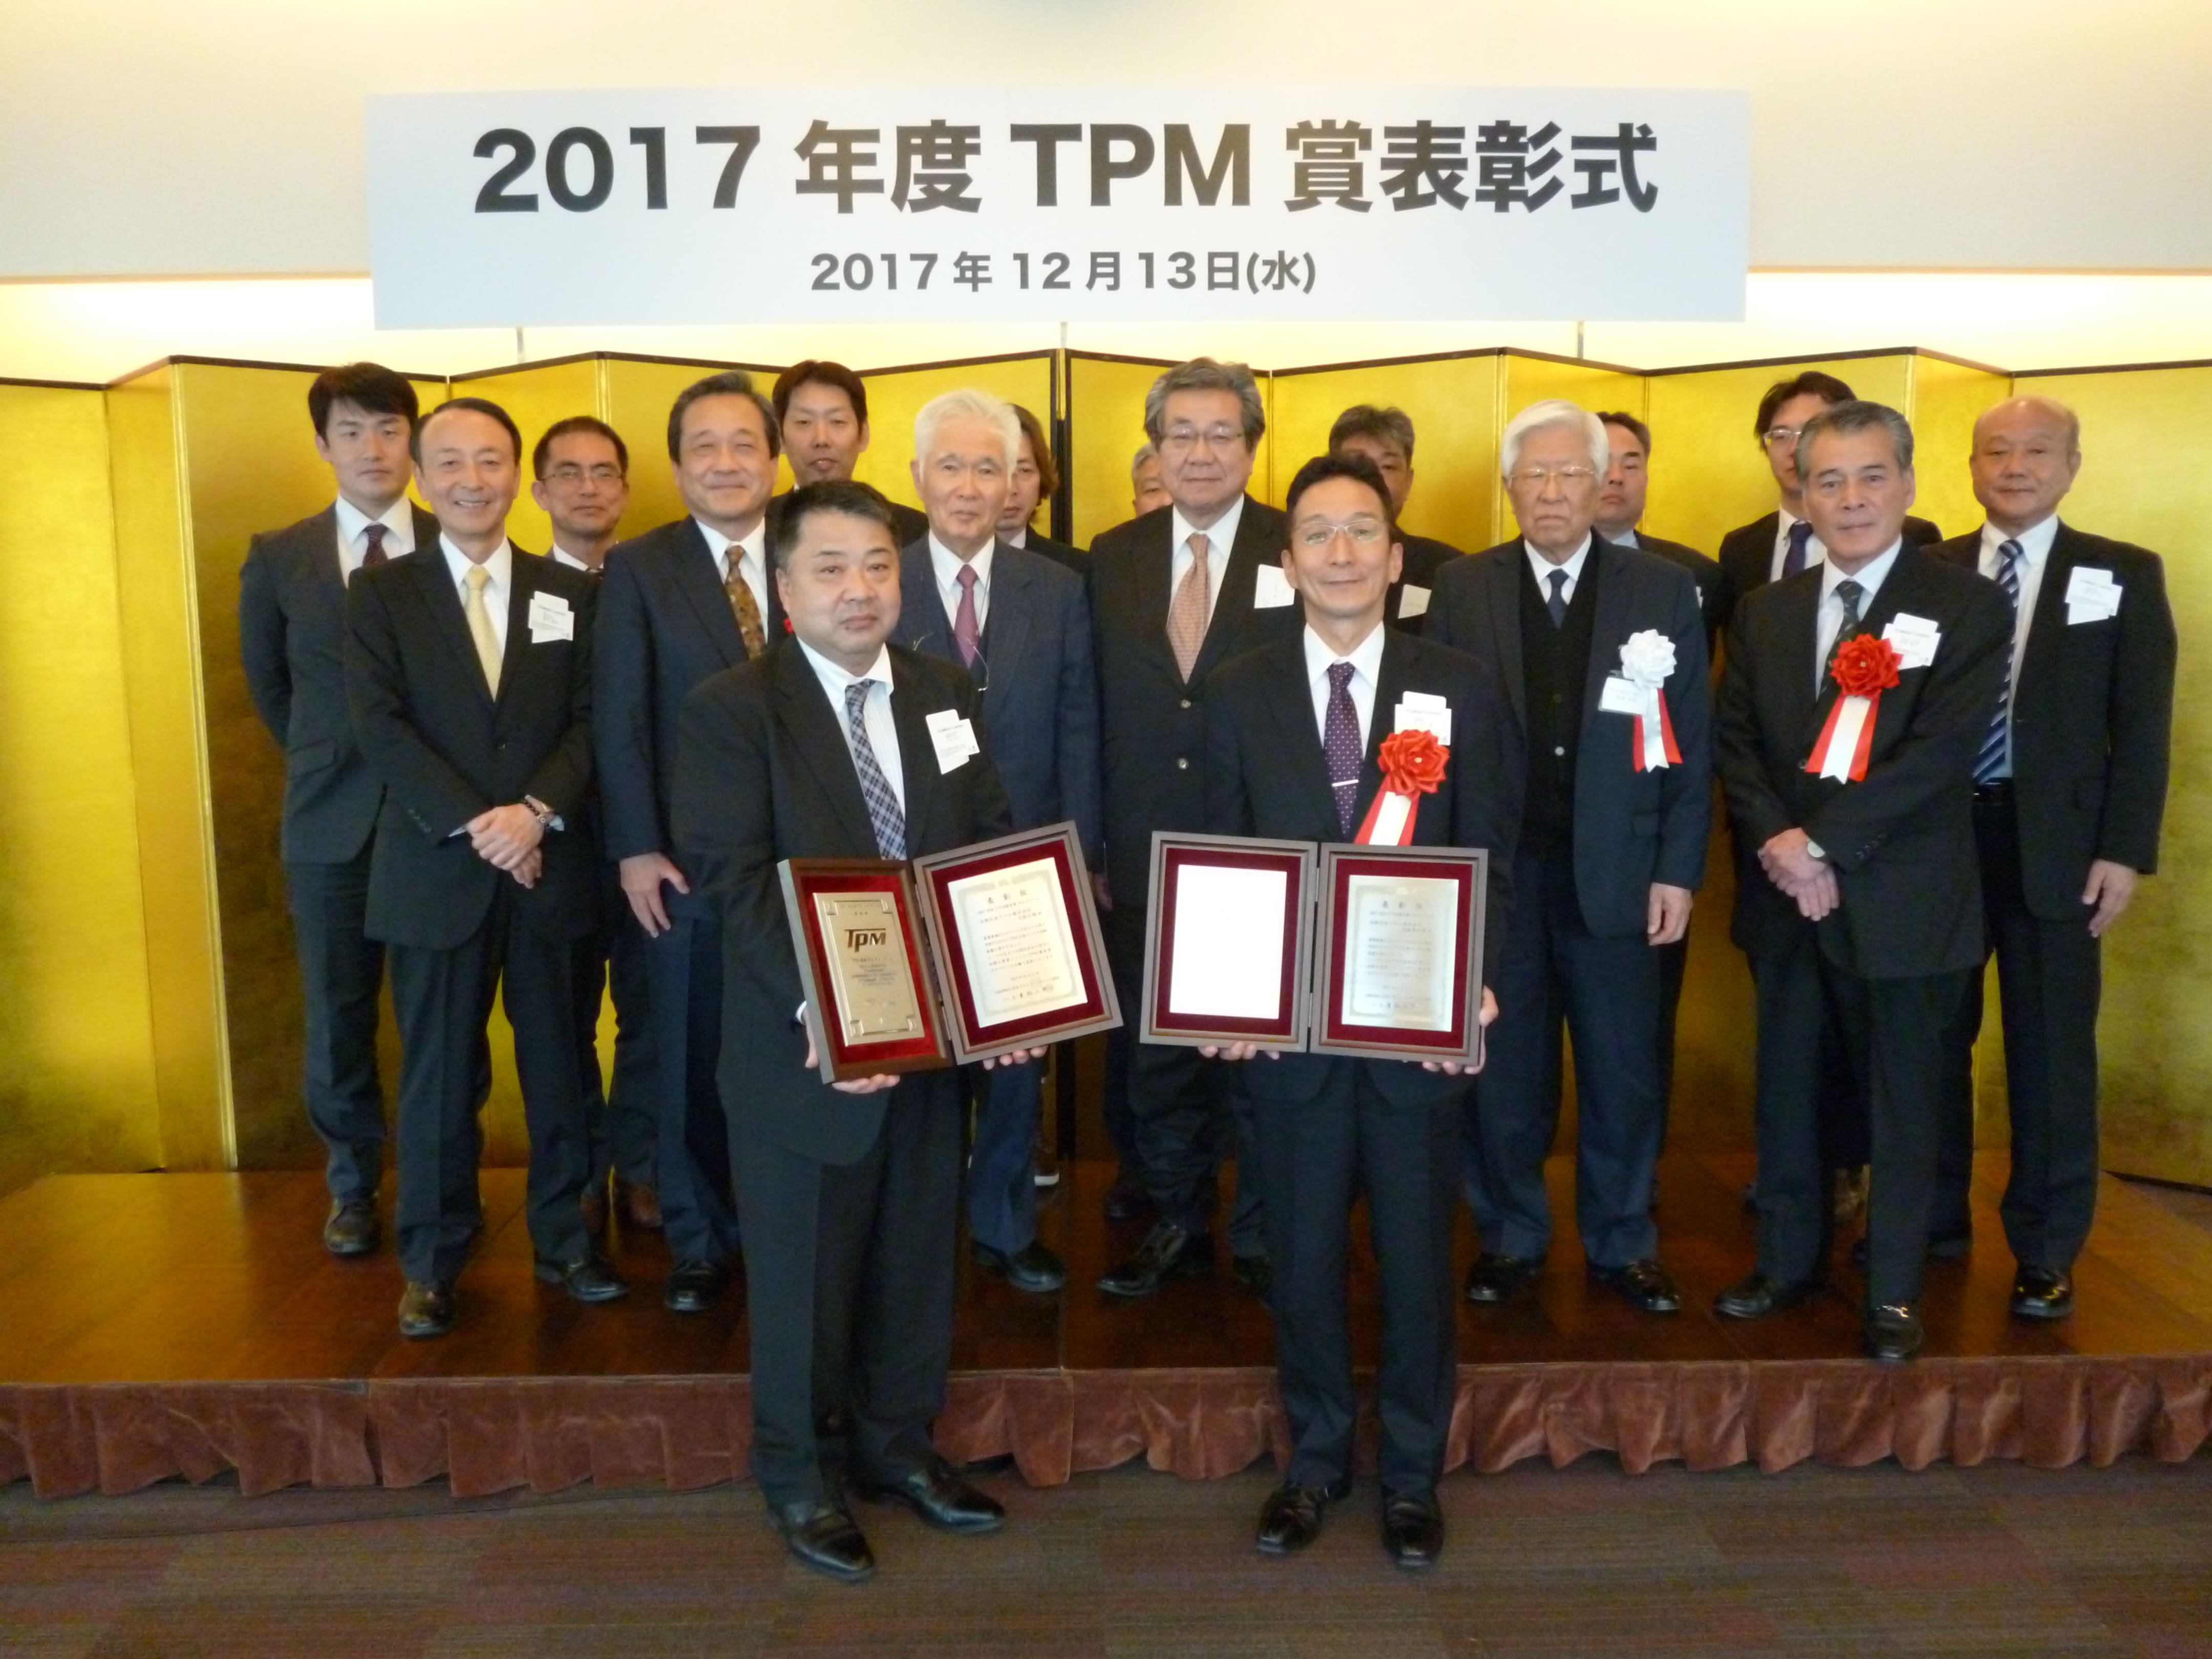 相模原工場、大阪工場が 史上最短の2年でTPM優秀賞カテゴリーAを受賞